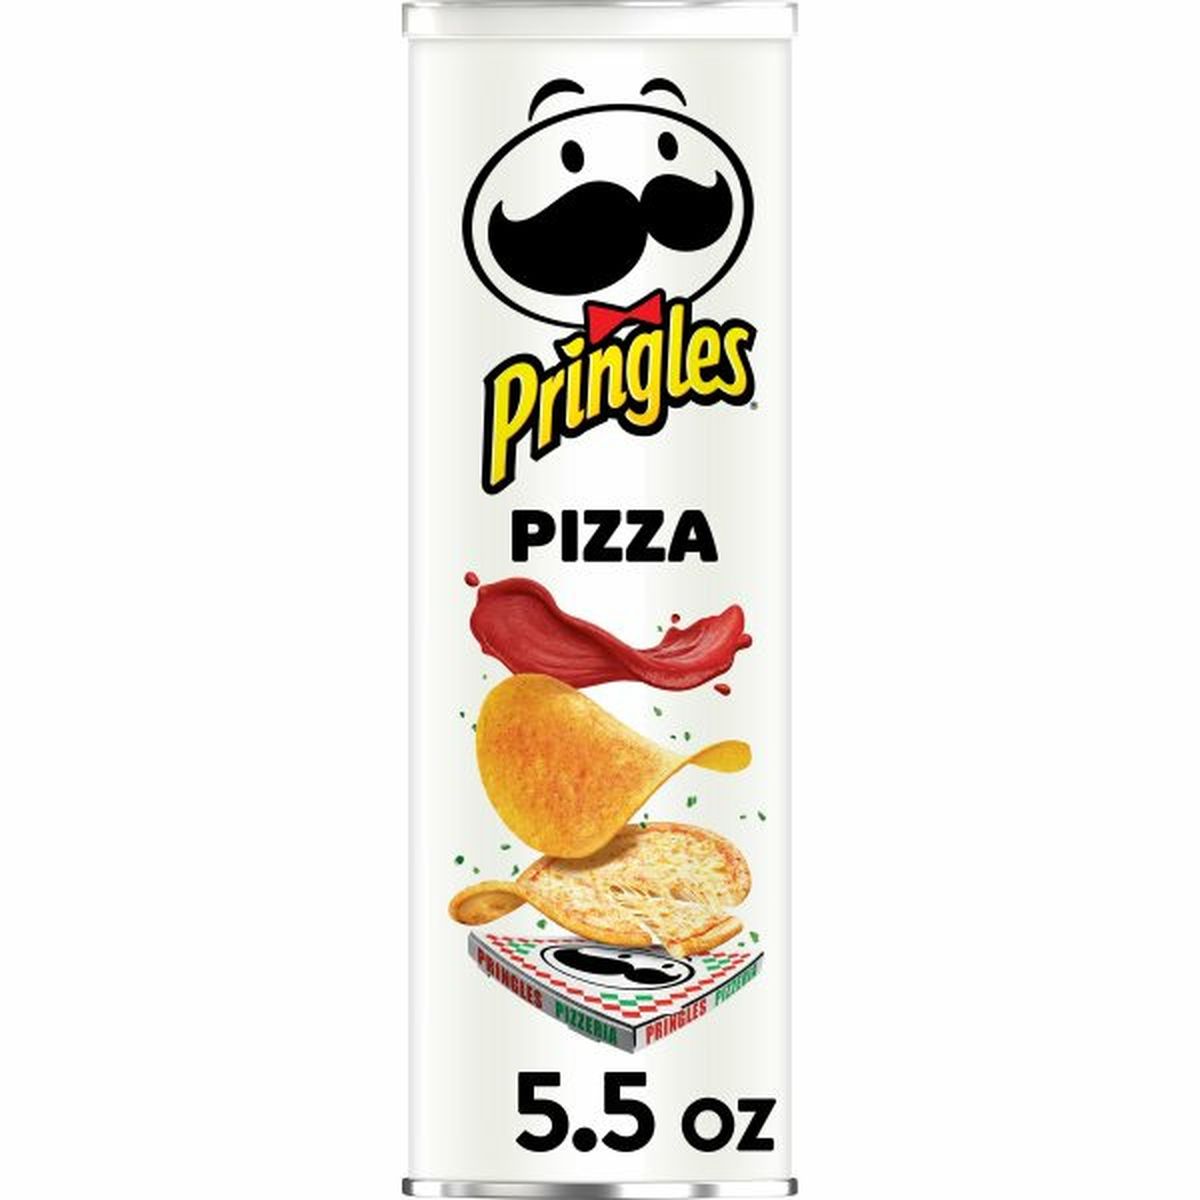 Calories in Pringles Salty Snacks Pringles Potato Crisps Chips, Pizza, Snacks On The Go, 5.5oz